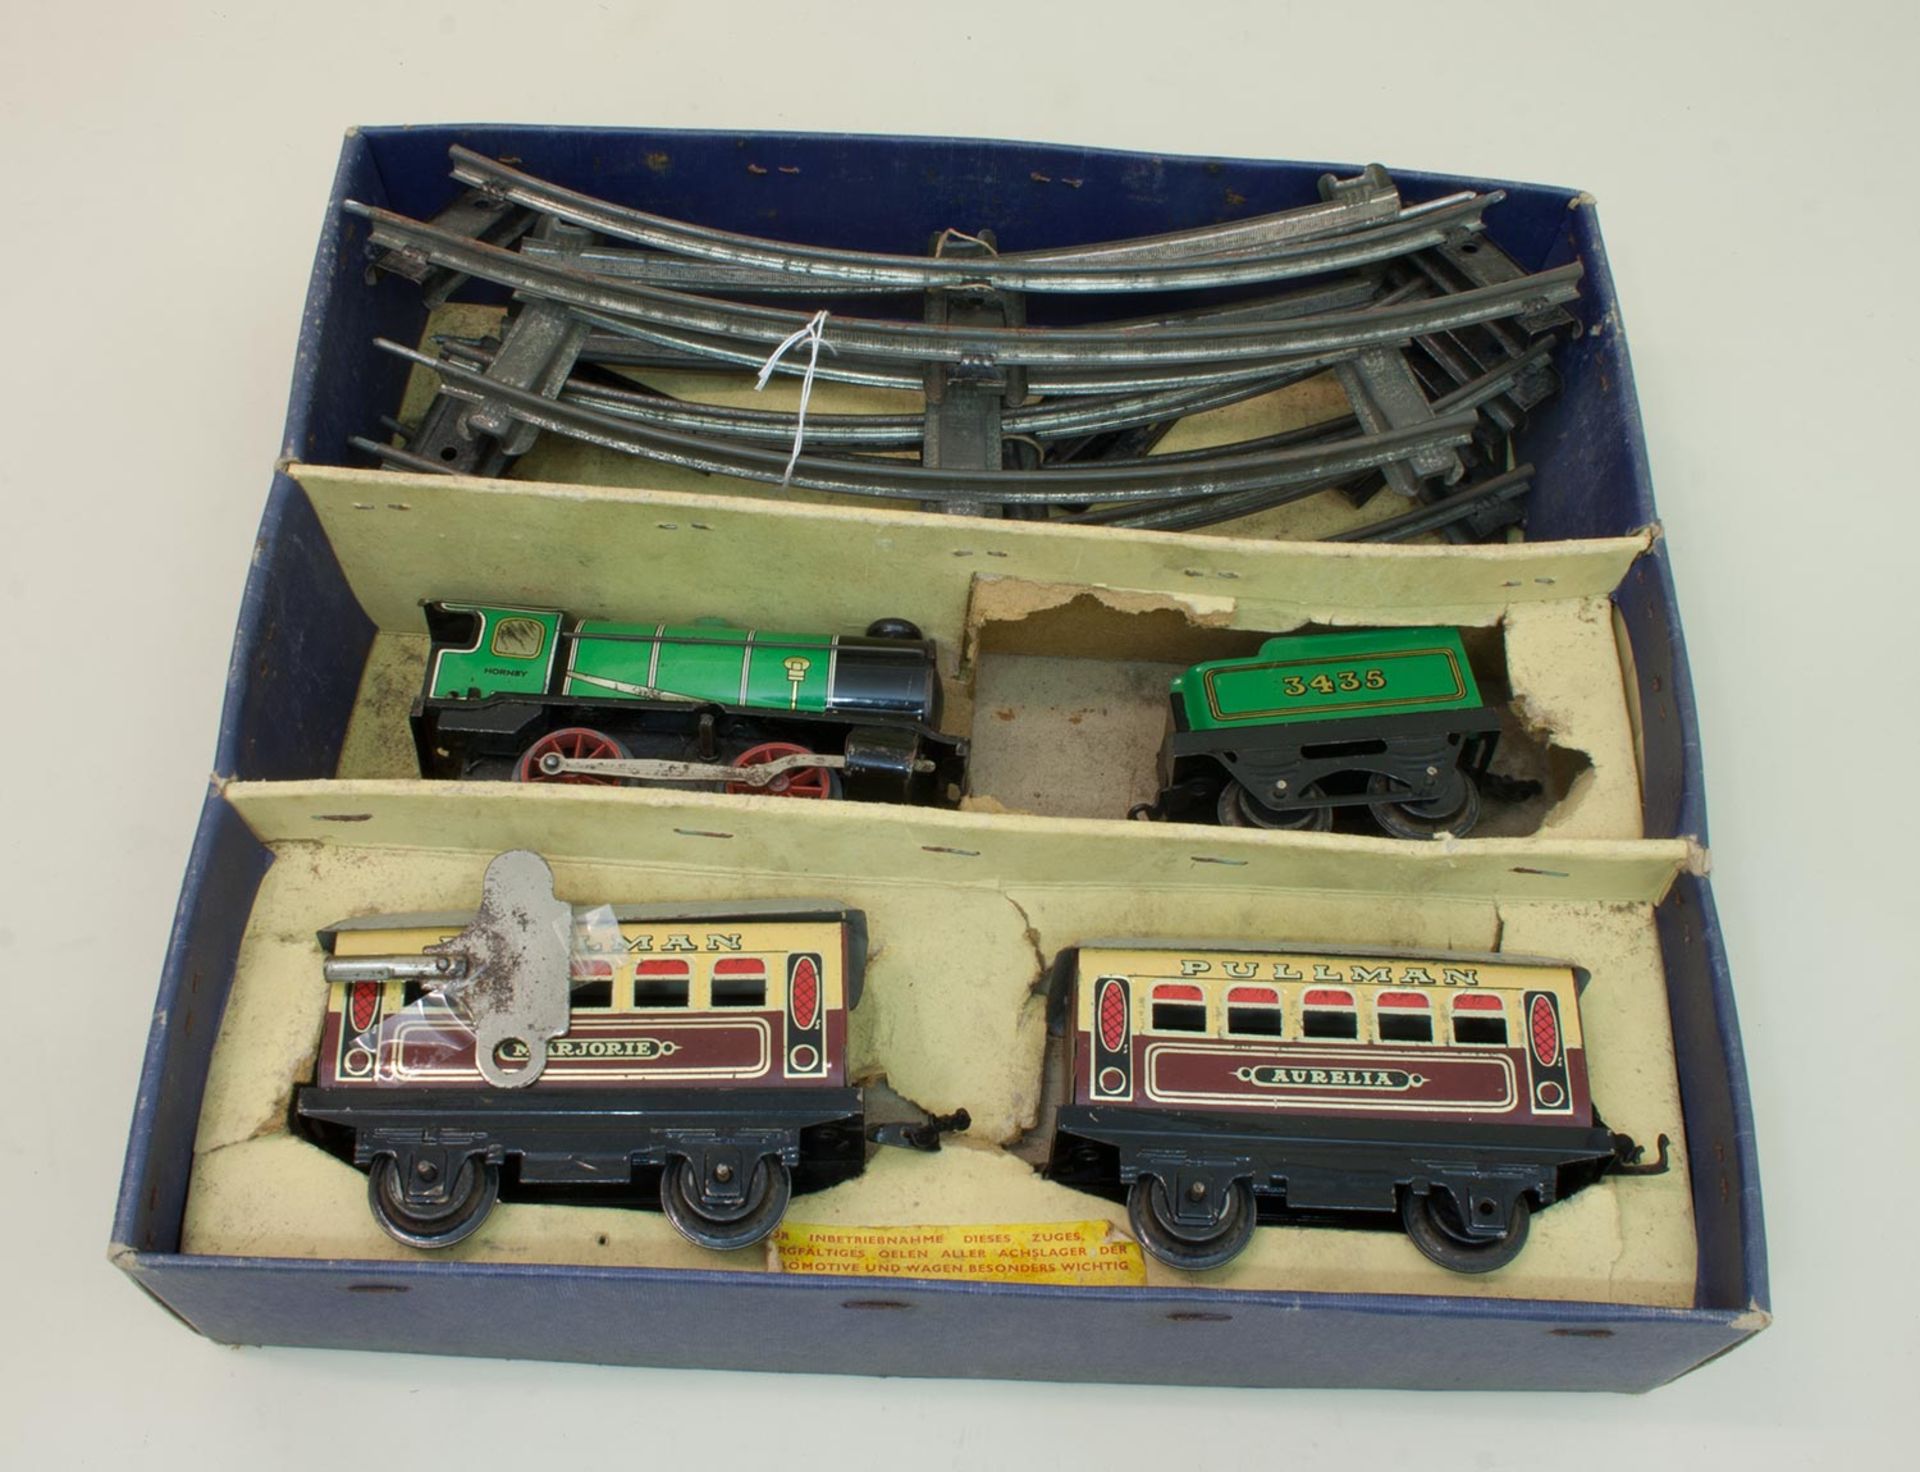 Hornby Zug Spielzeug Eisenbahn, Hersteller Meccano Ltd./ England, Spur 0, Blech lithografiert mit